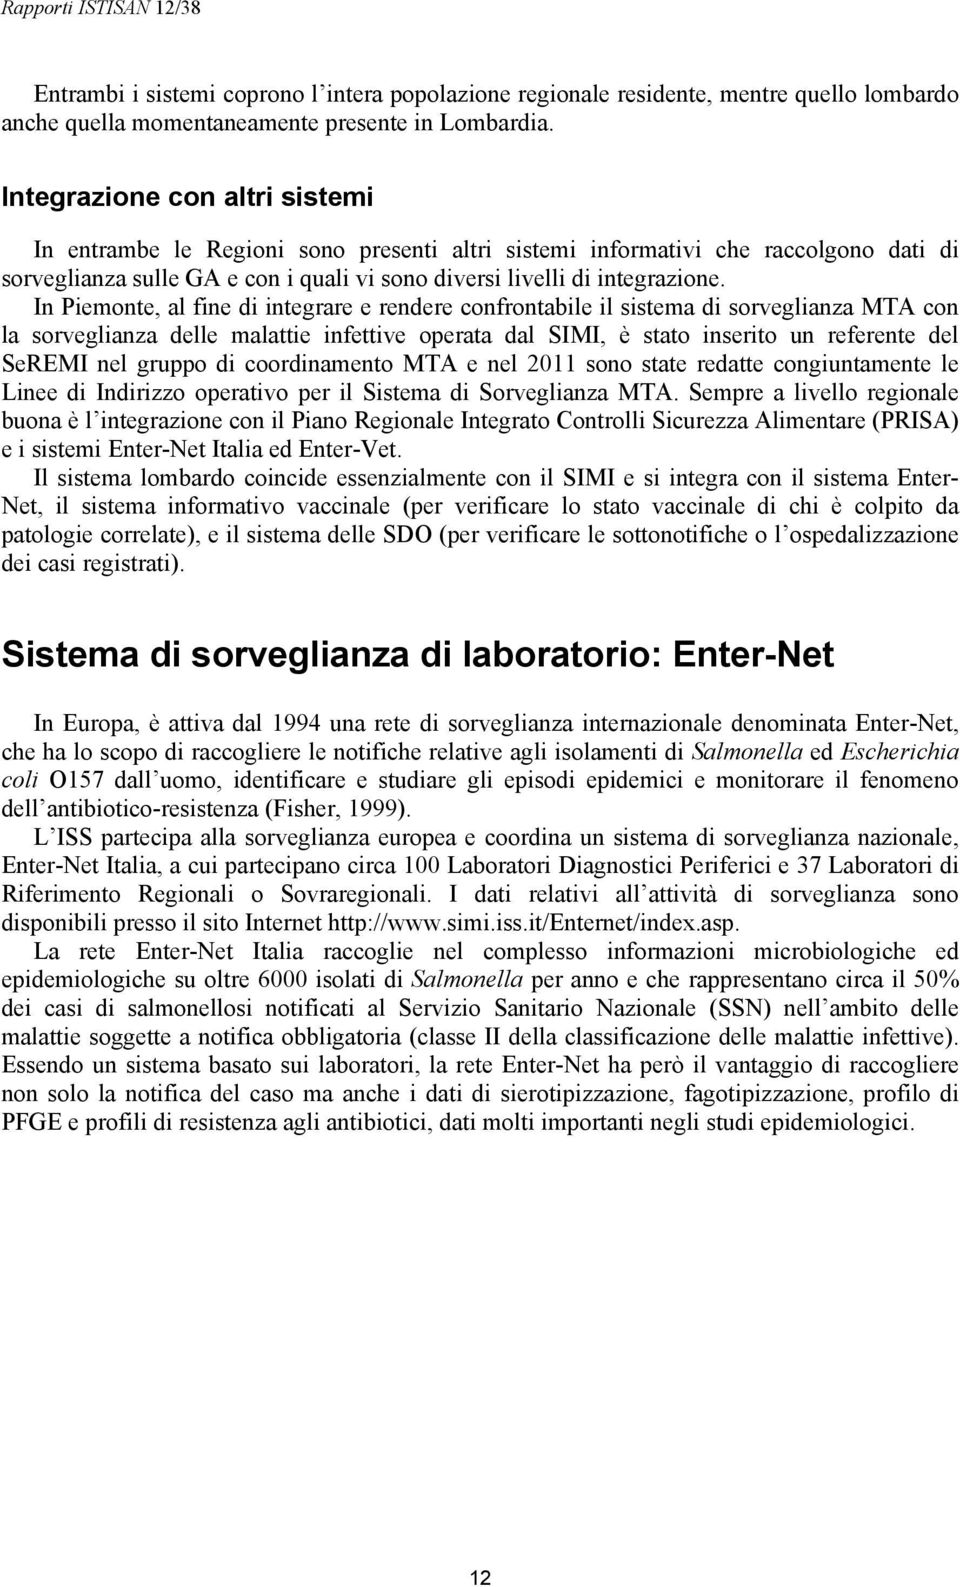 In Piemonte, al fine di integrare e rendere confrontabile il sistema di sorveglianza MTA con la sorveglianza delle malattie infettive operata dal SIMI, è stato inserito un referente del SeREMI nel